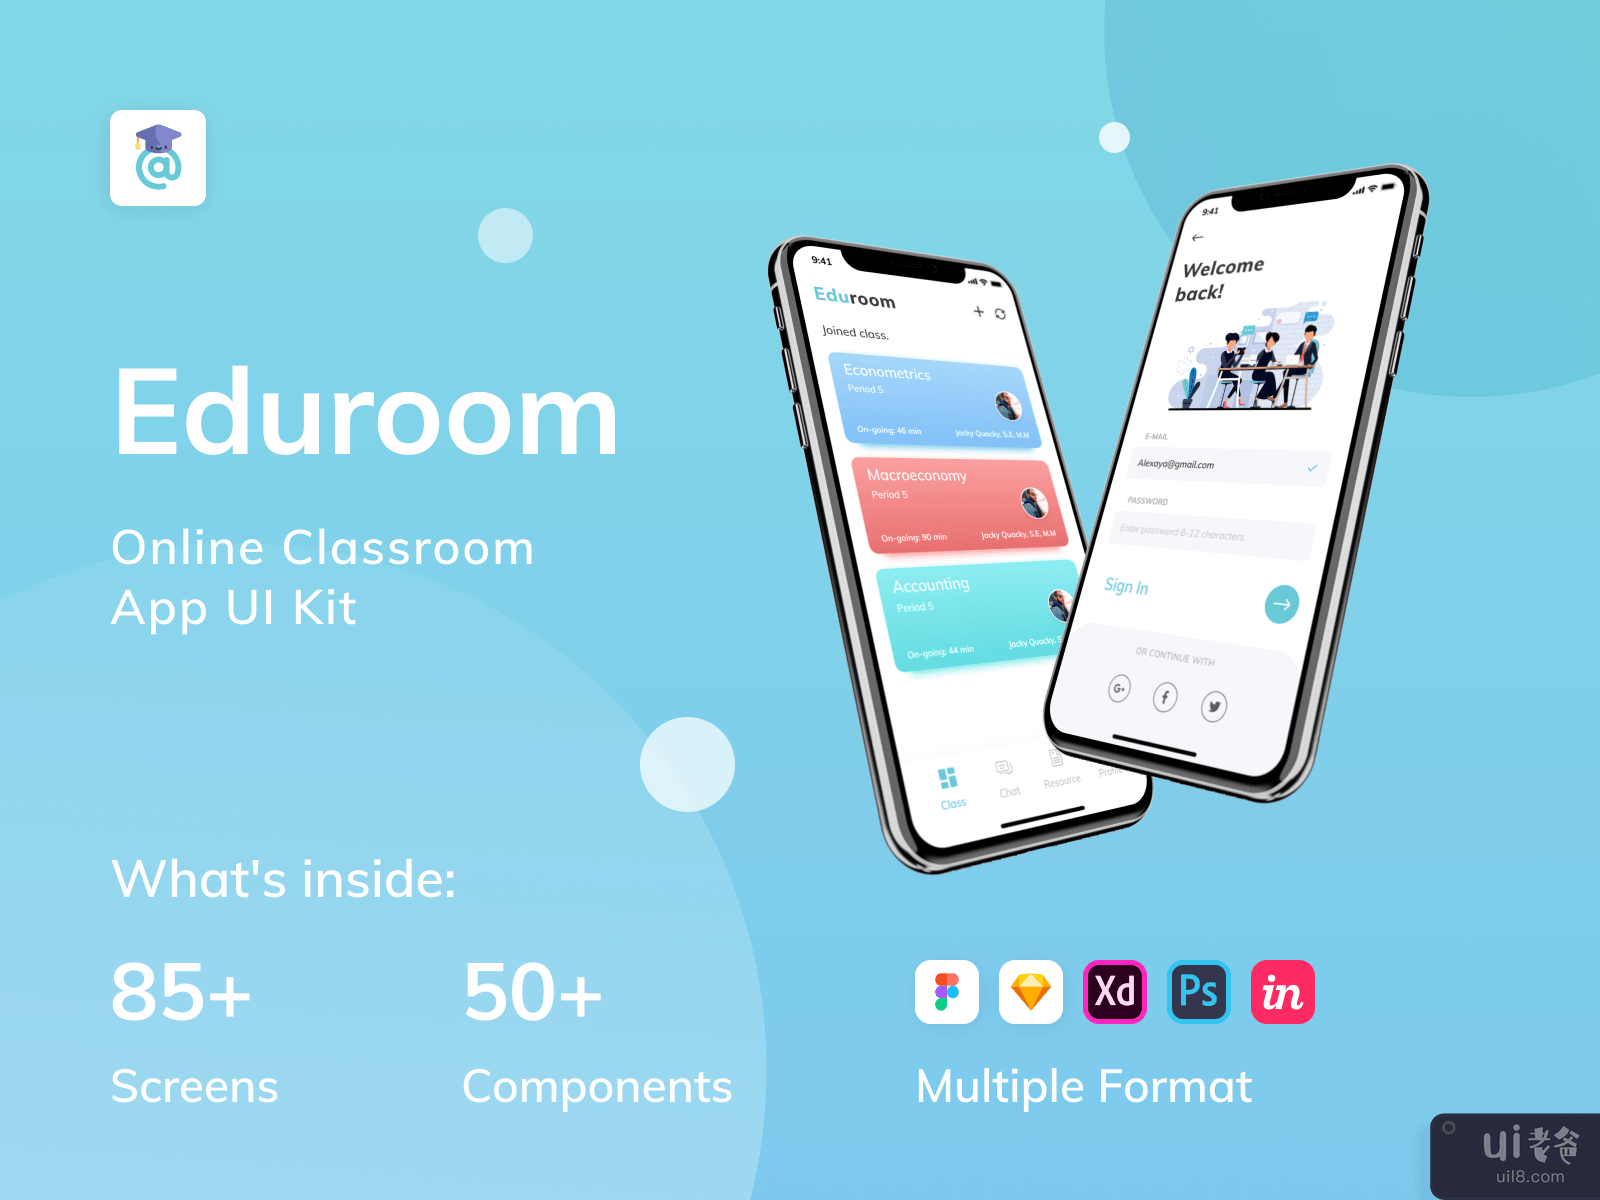 EduRoom - 在线课堂应用程序 UI 工具包（第 3 部分）(EduRoom - Online Class Room App UI Kit (Part 3))插图7